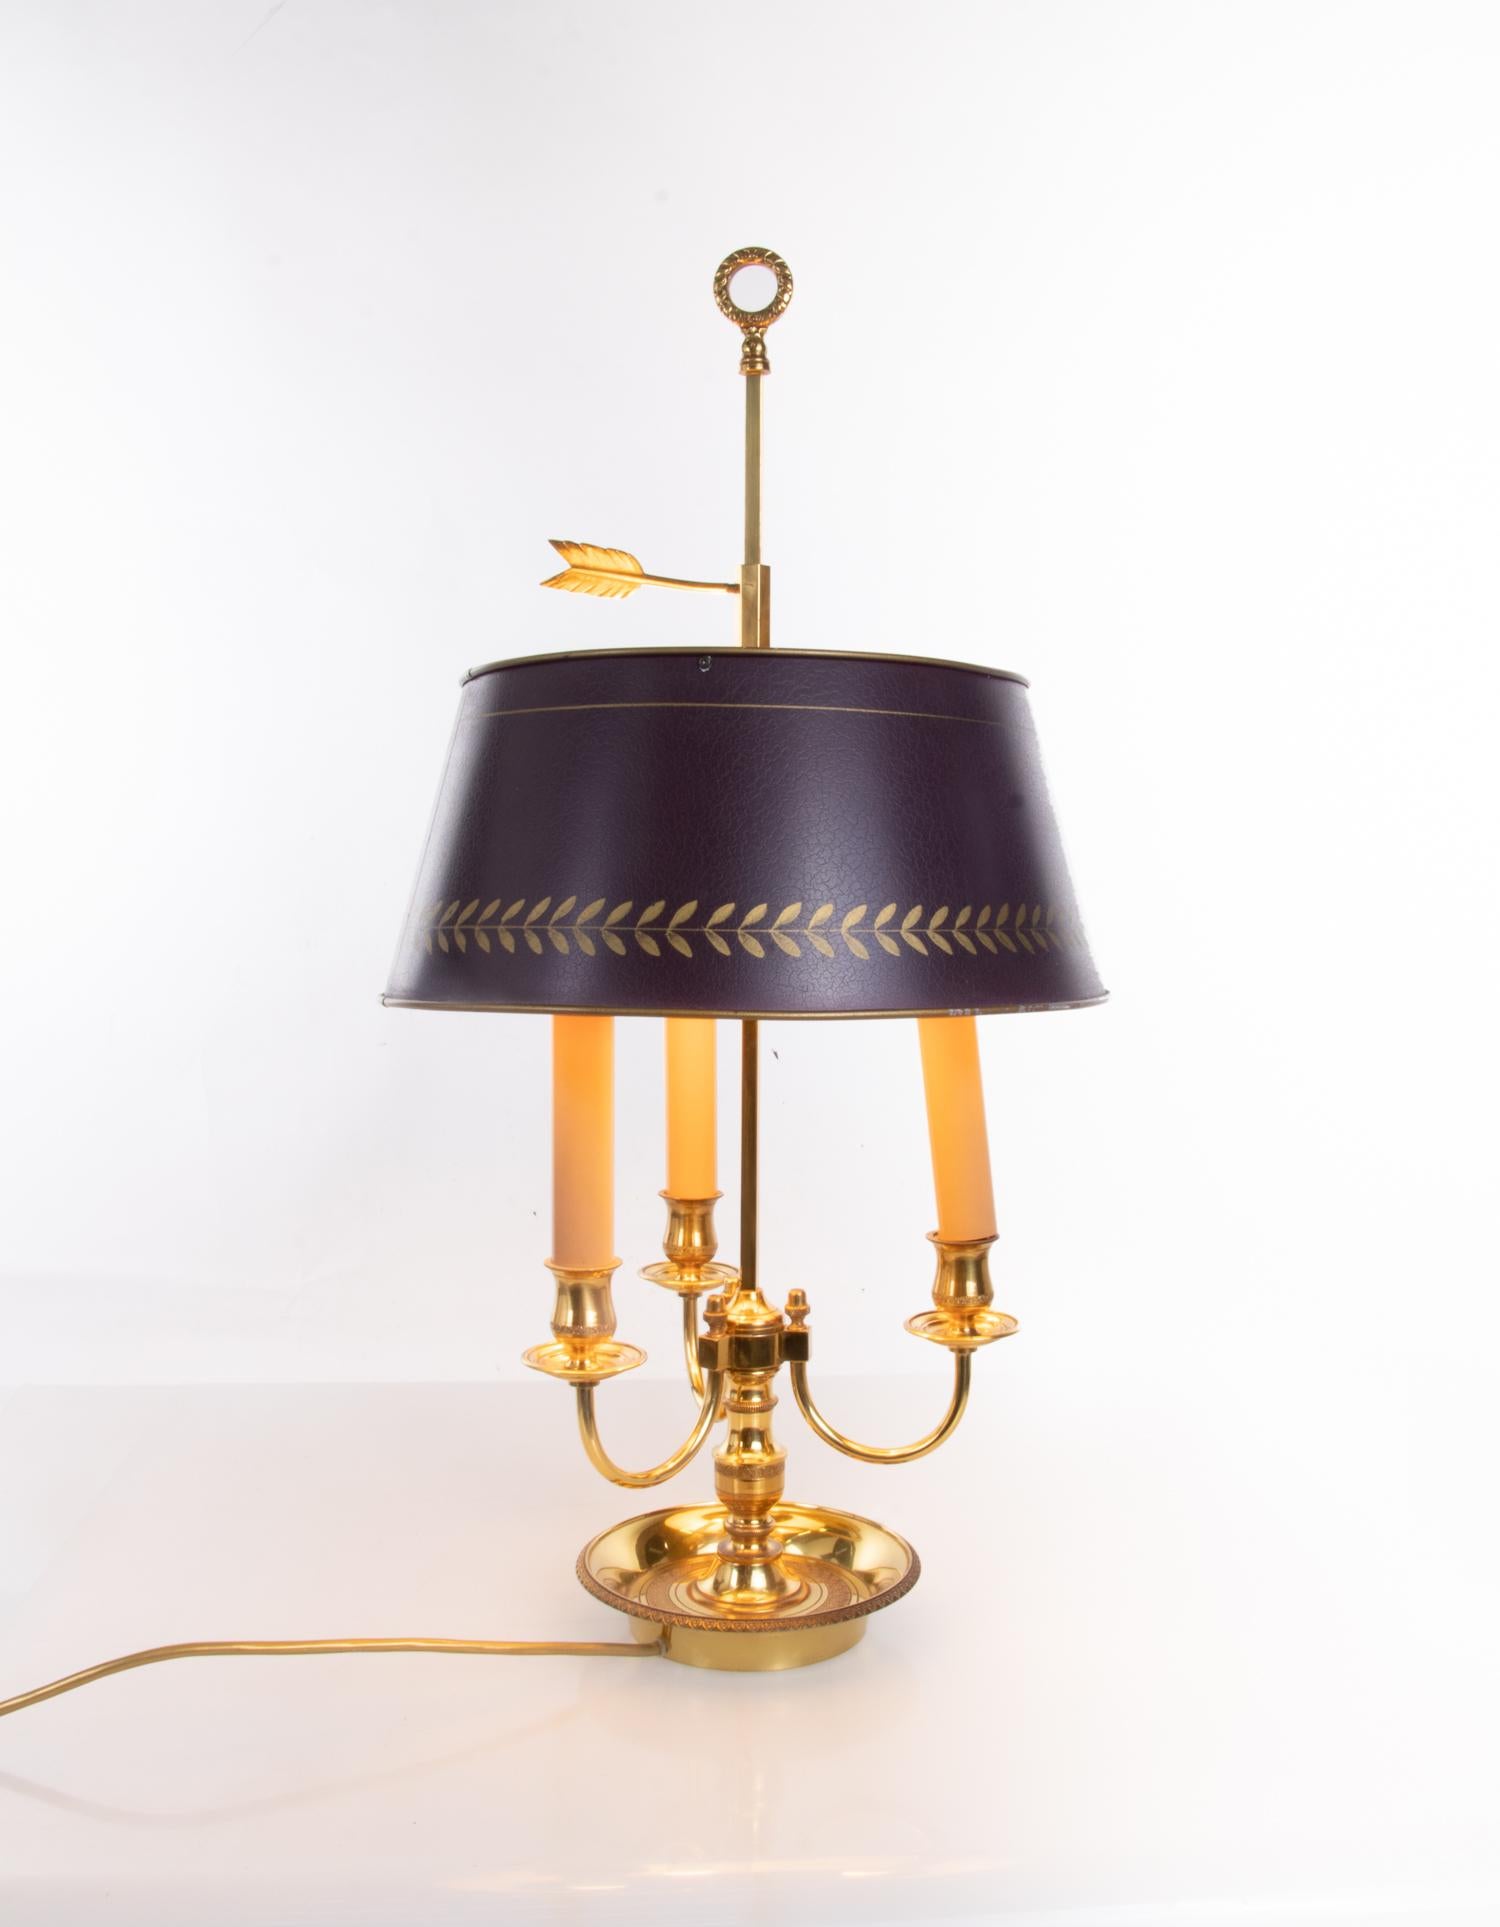 Elegante Bouillotte-Lampe im Louis-XV-Stil aus französischer Bronze mit einem verstellbaren, lackierten Metallschirm und drei elektrifizierten Kerzenarmen. 

Maße: Höhe 25,6